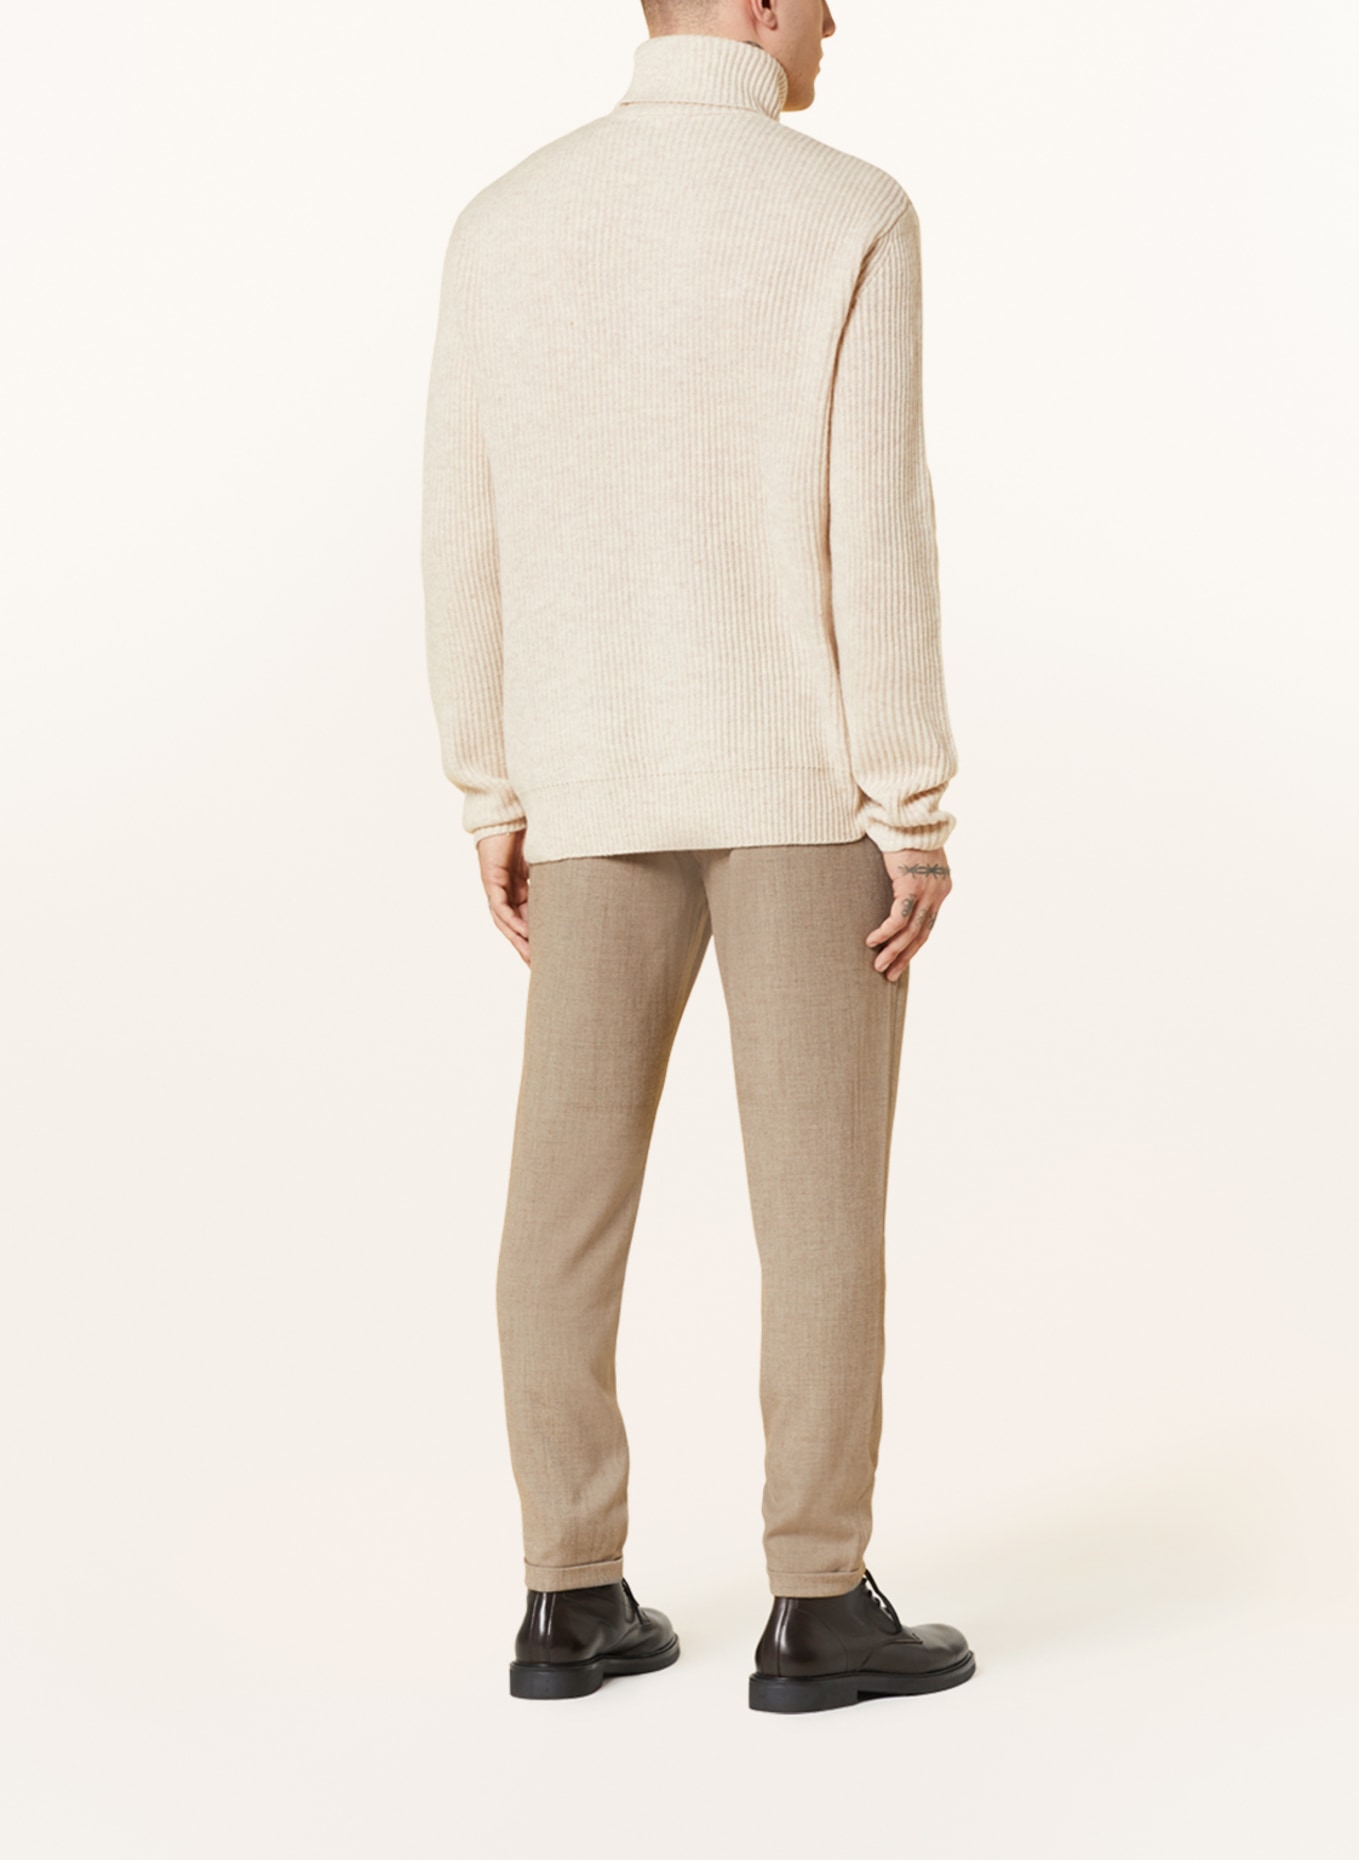 LES DEUX Turtleneck sweater EDDIE made of merino wool, Color: BEIGE (Image 3)